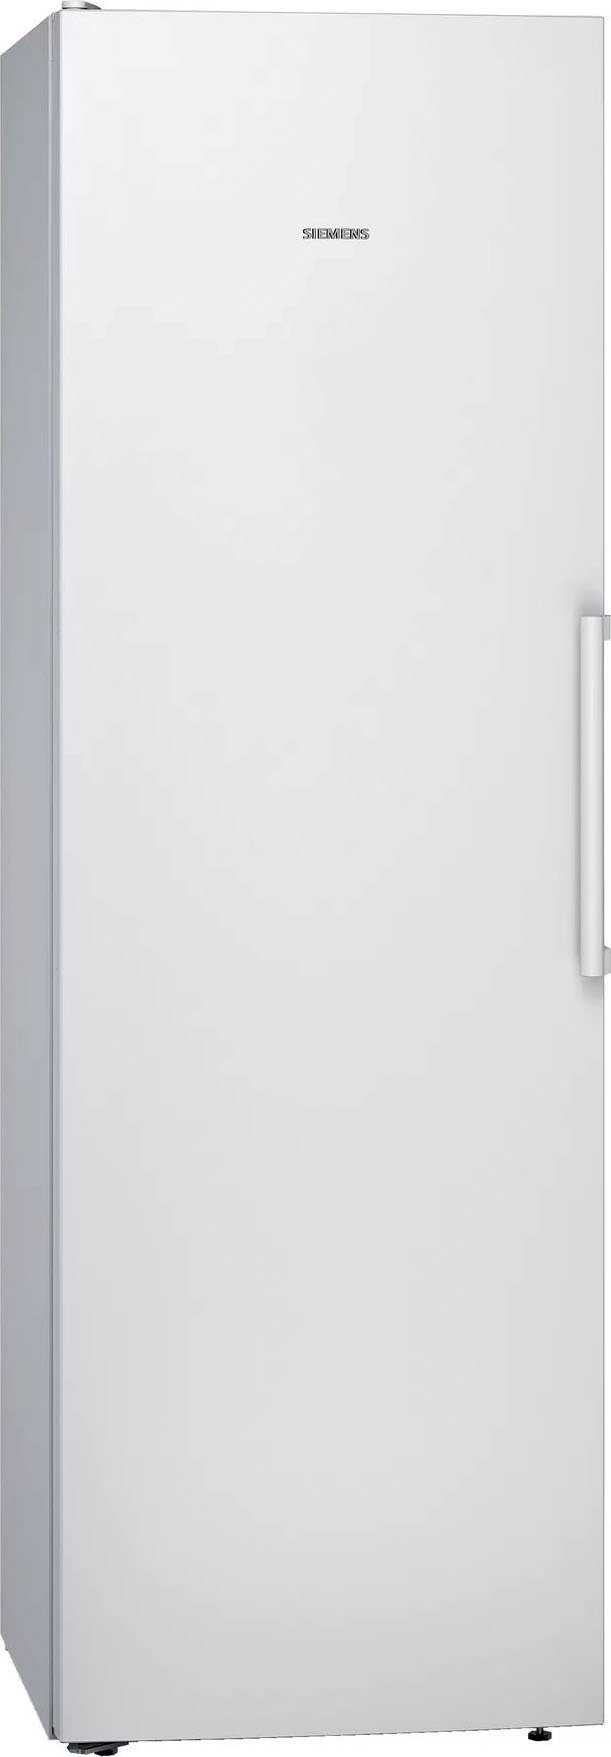 SIEMENS Kühlschrank iQ300 KS36VVWEP, 186 cm hoch, 60 cm breit weiß | Kühlschränke